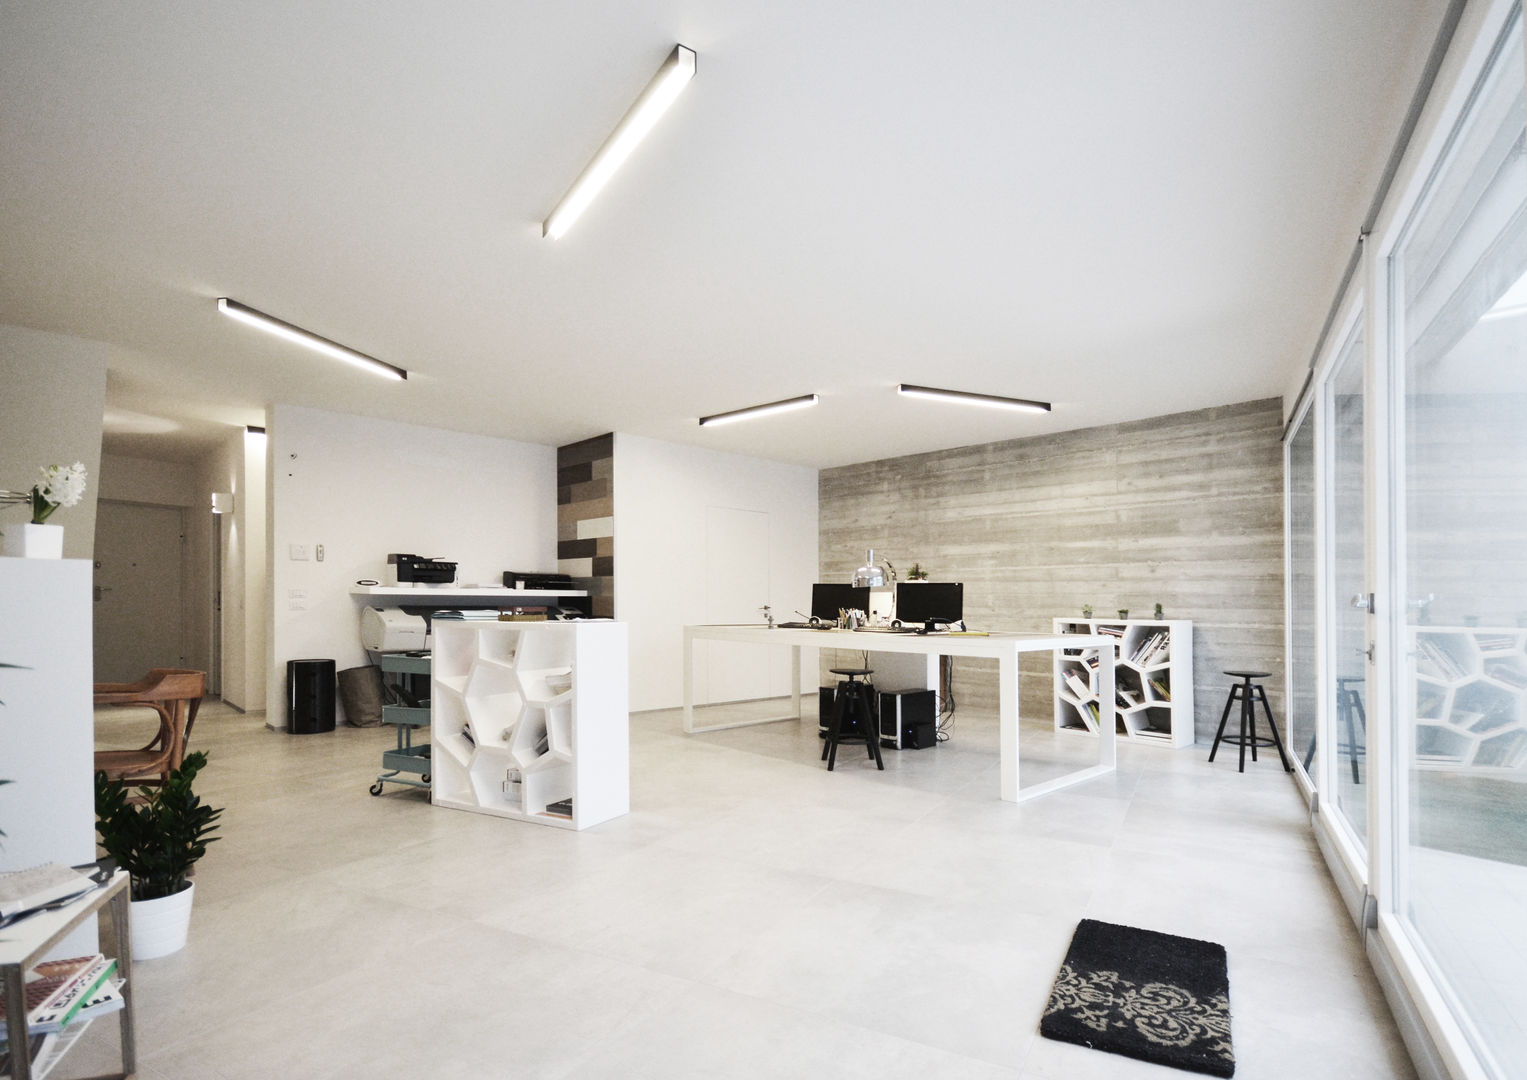 house studio: living workshop, francesco valentini architetto francesco valentini architetto オリジナルデザインの 書斎